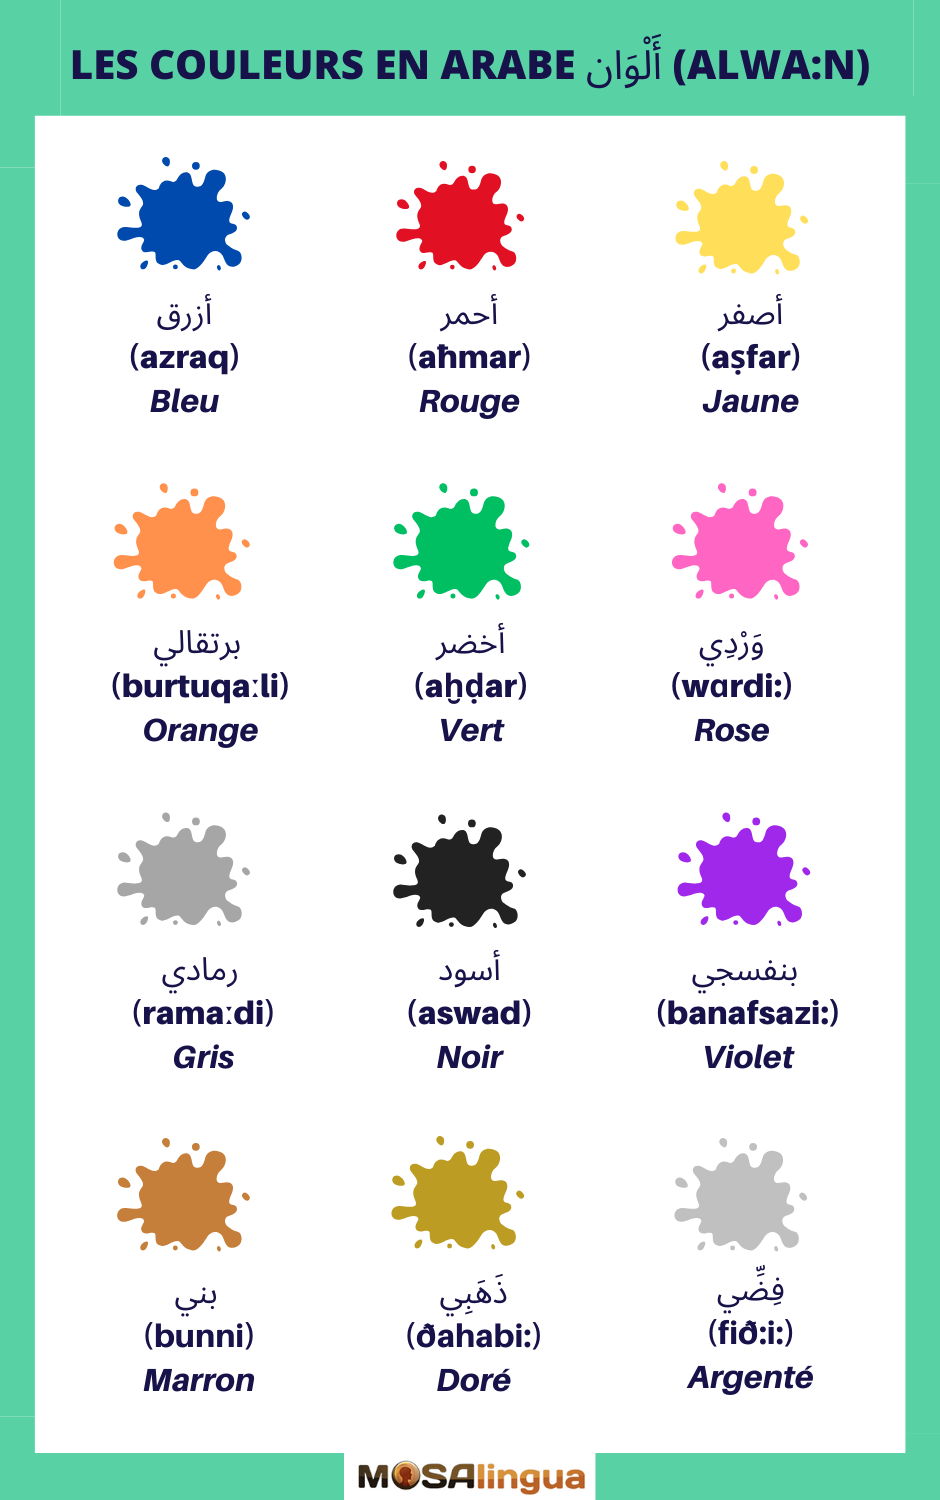 Guide pour apprendre les couleurs en français